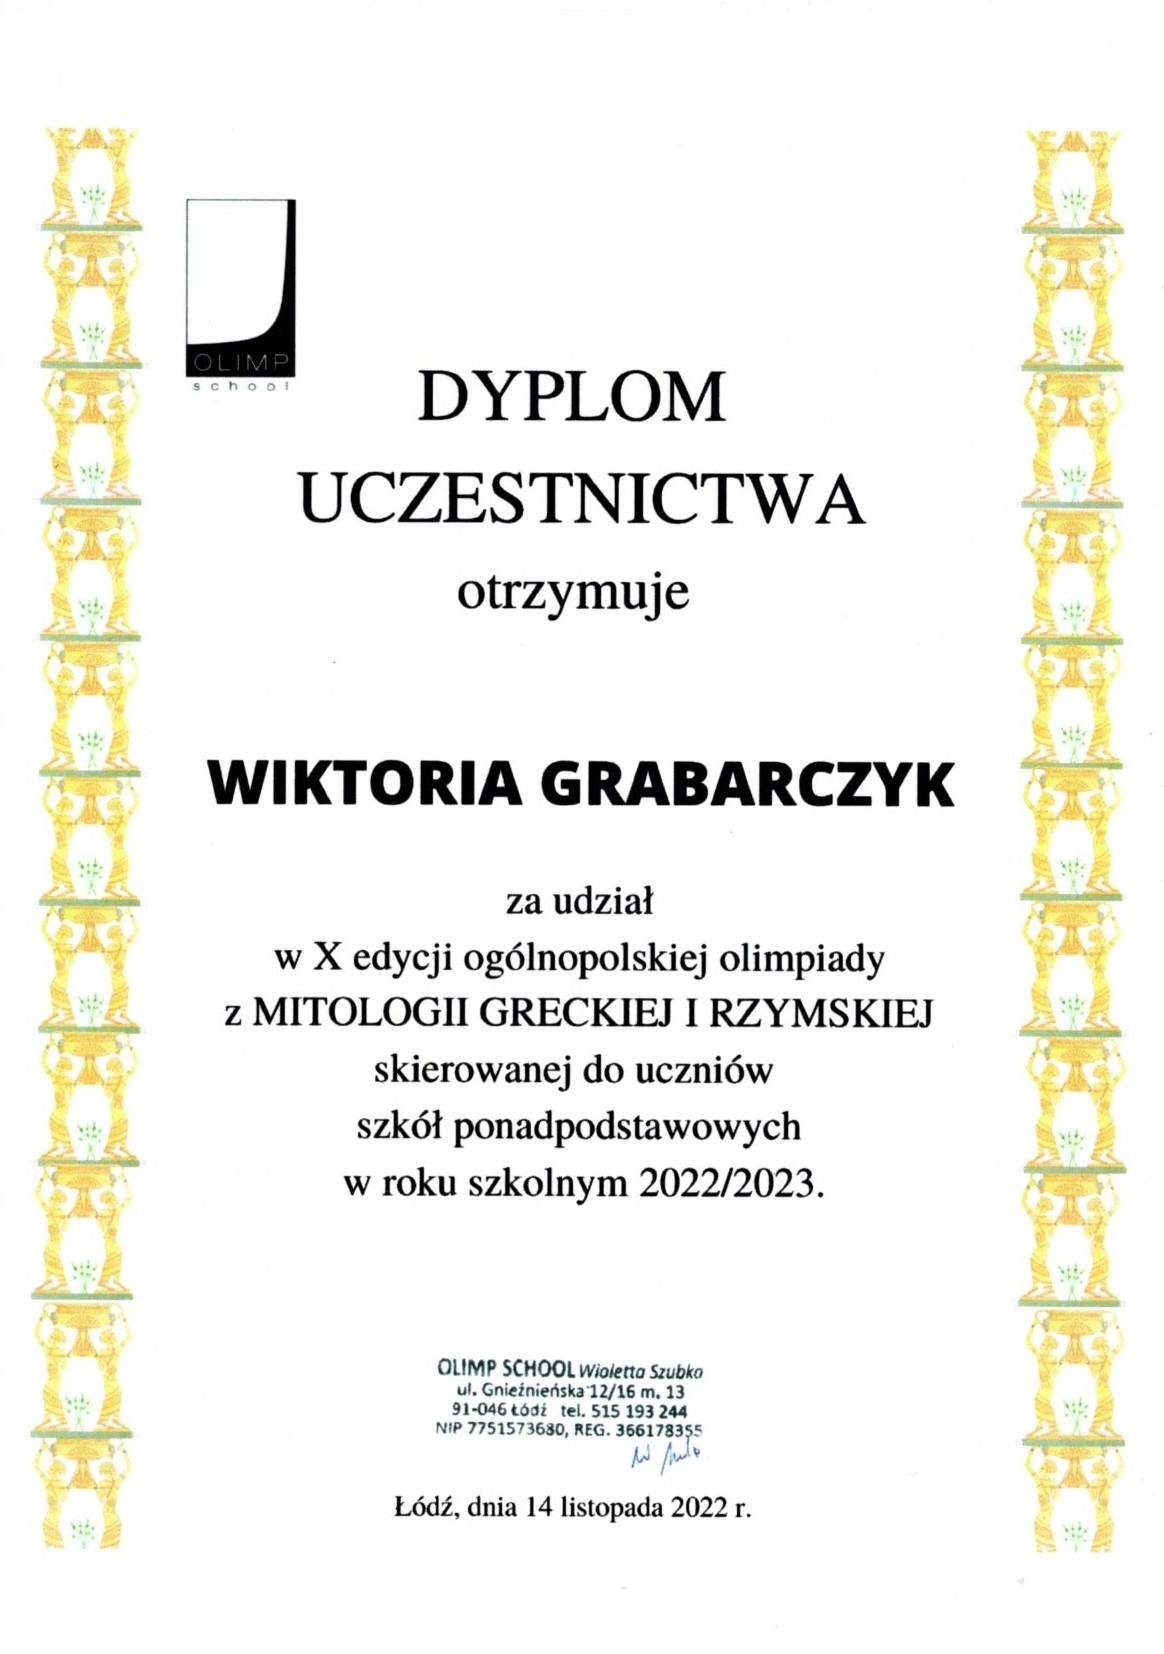 Dyplom uczestnictwa dla Wiktorii Grabarczyk